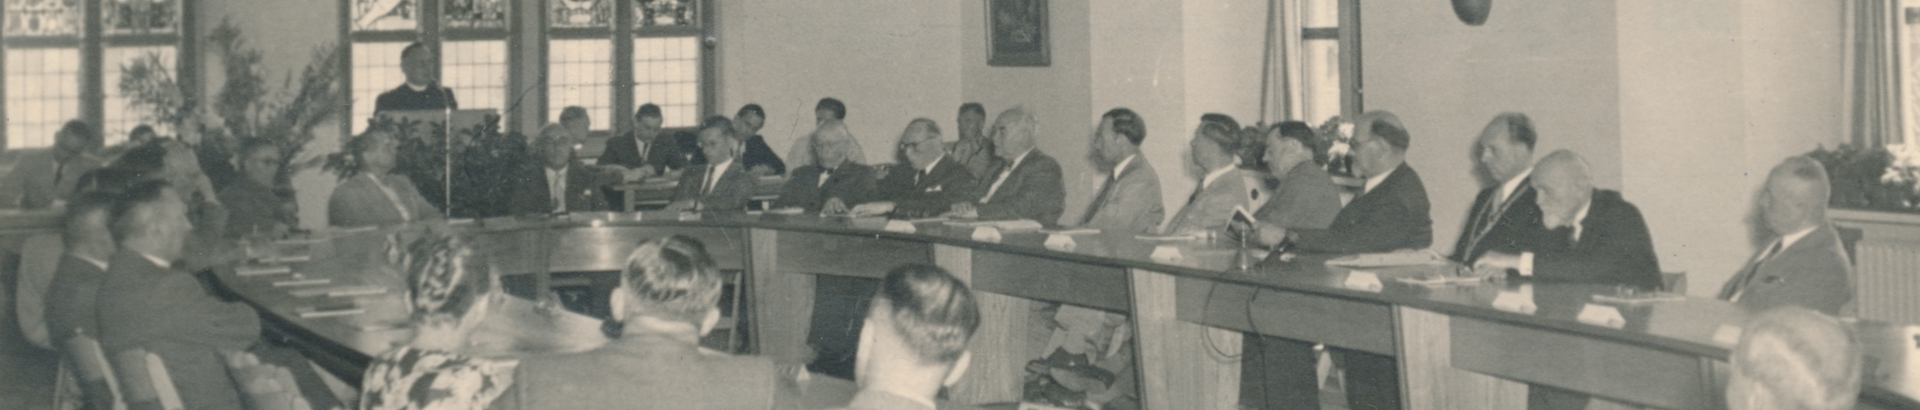 Festsitzung Gemeinderat 1951